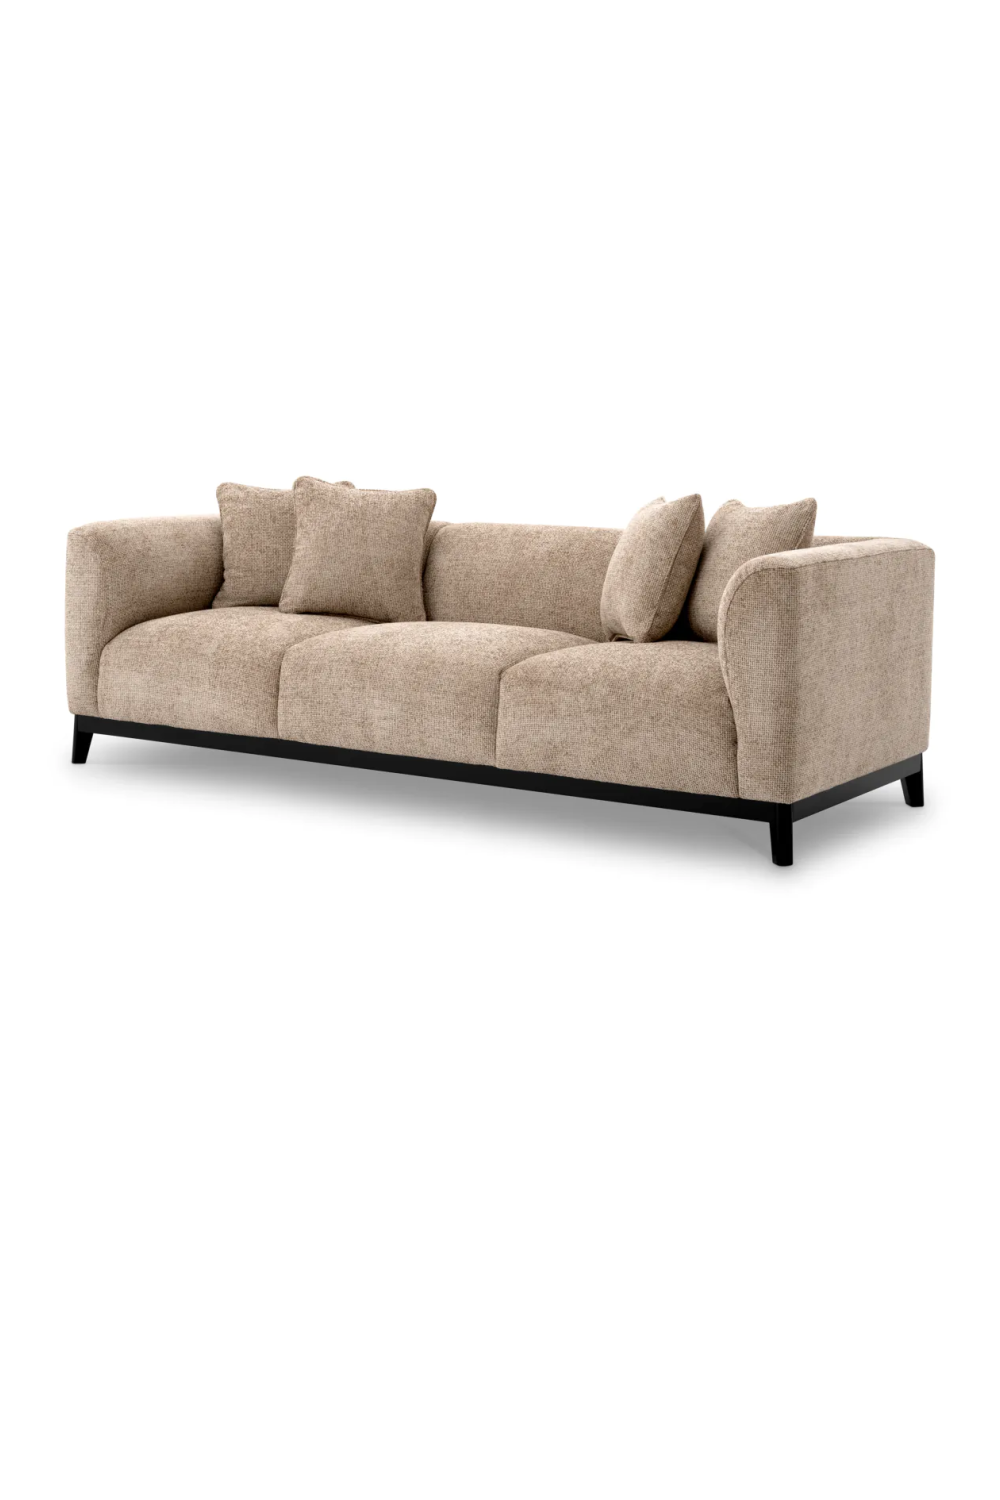 Beige Modern Sofa | Eichholtz Corso | Oroa.com